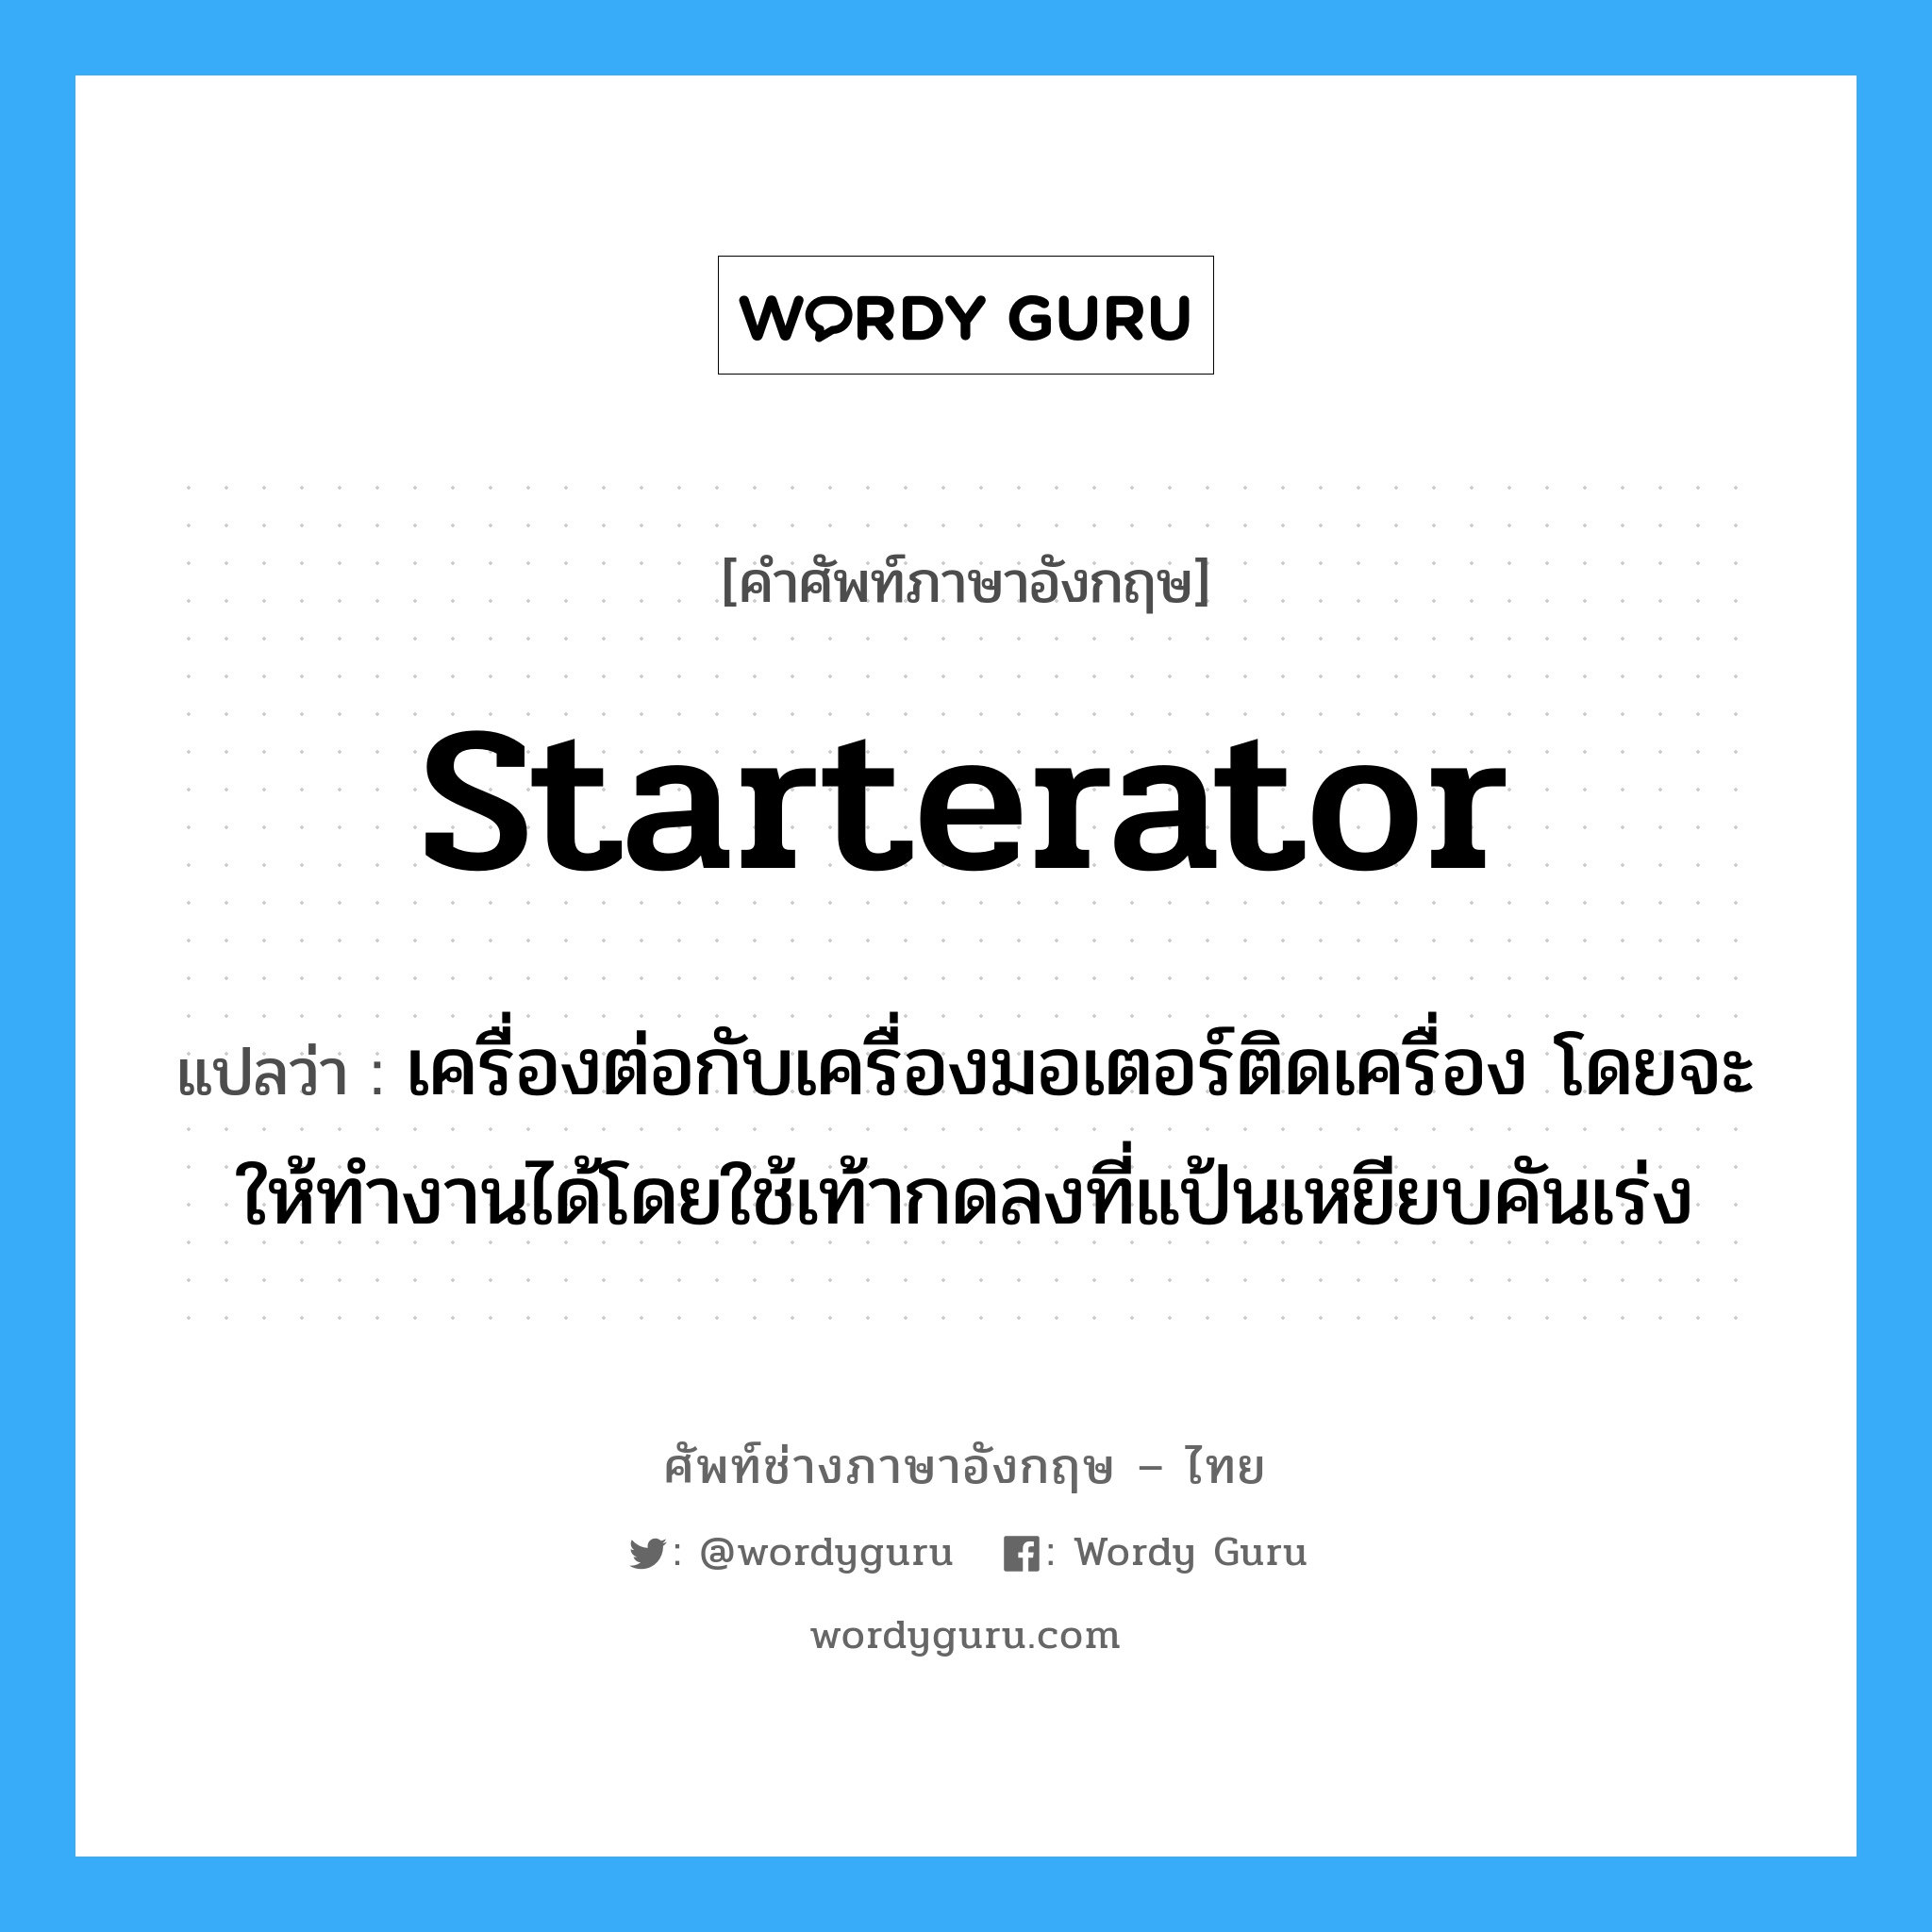 starterator แปลว่า?, คำศัพท์ช่างภาษาอังกฤษ - ไทย starterator คำศัพท์ภาษาอังกฤษ starterator แปลว่า เครื่องต่อกับเครื่องมอเตอร์ติดเครื่อง โดยจะให้ทำงานได้โดยใช้เท้ากดลงที่แป้นเหยียบคันเร่ง